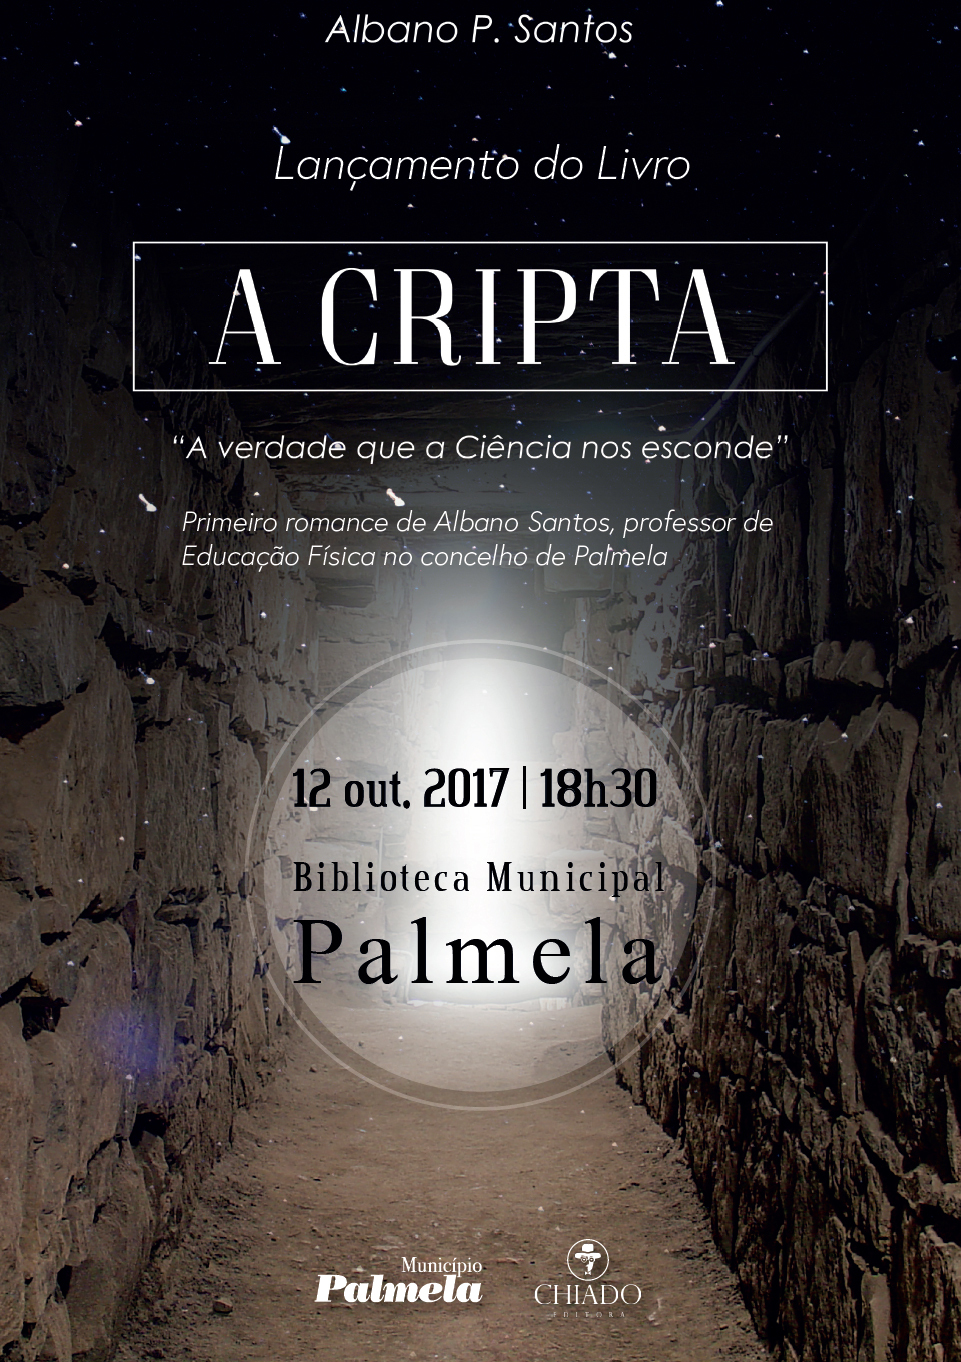 Lançamento do livro "A Cripta"